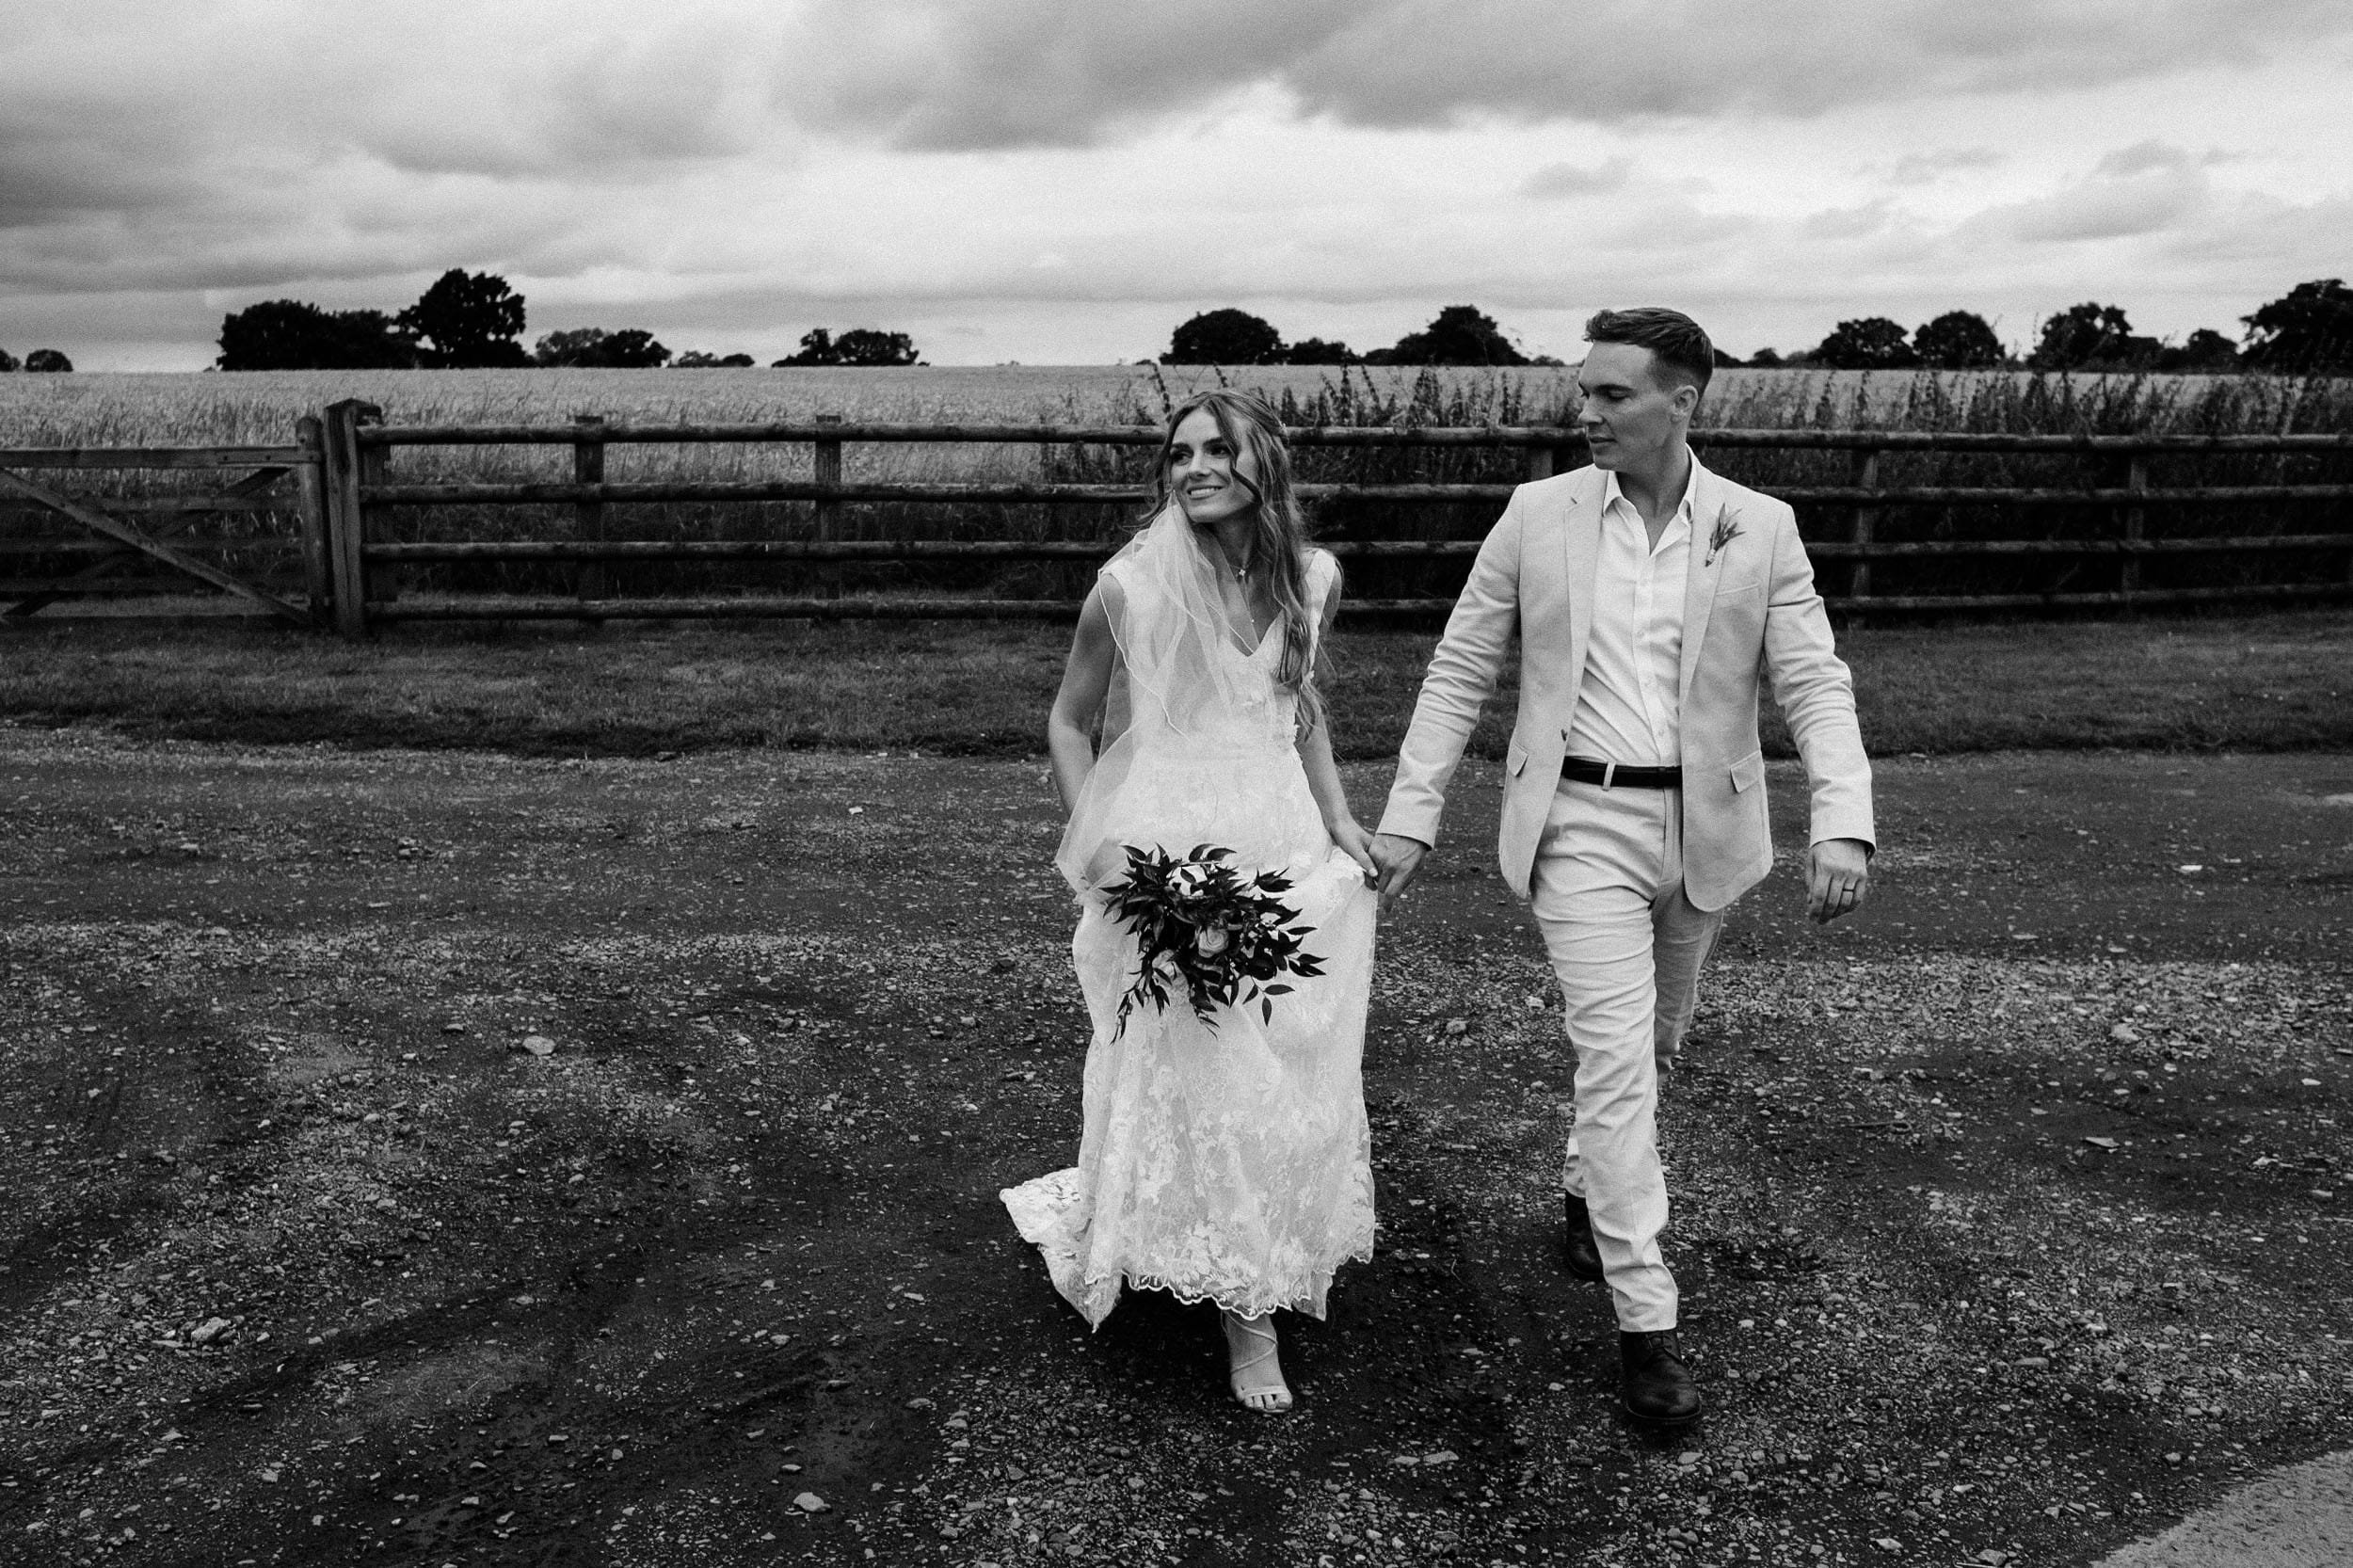 mythe-barn-wedding-photographer-10010 copy.jpg